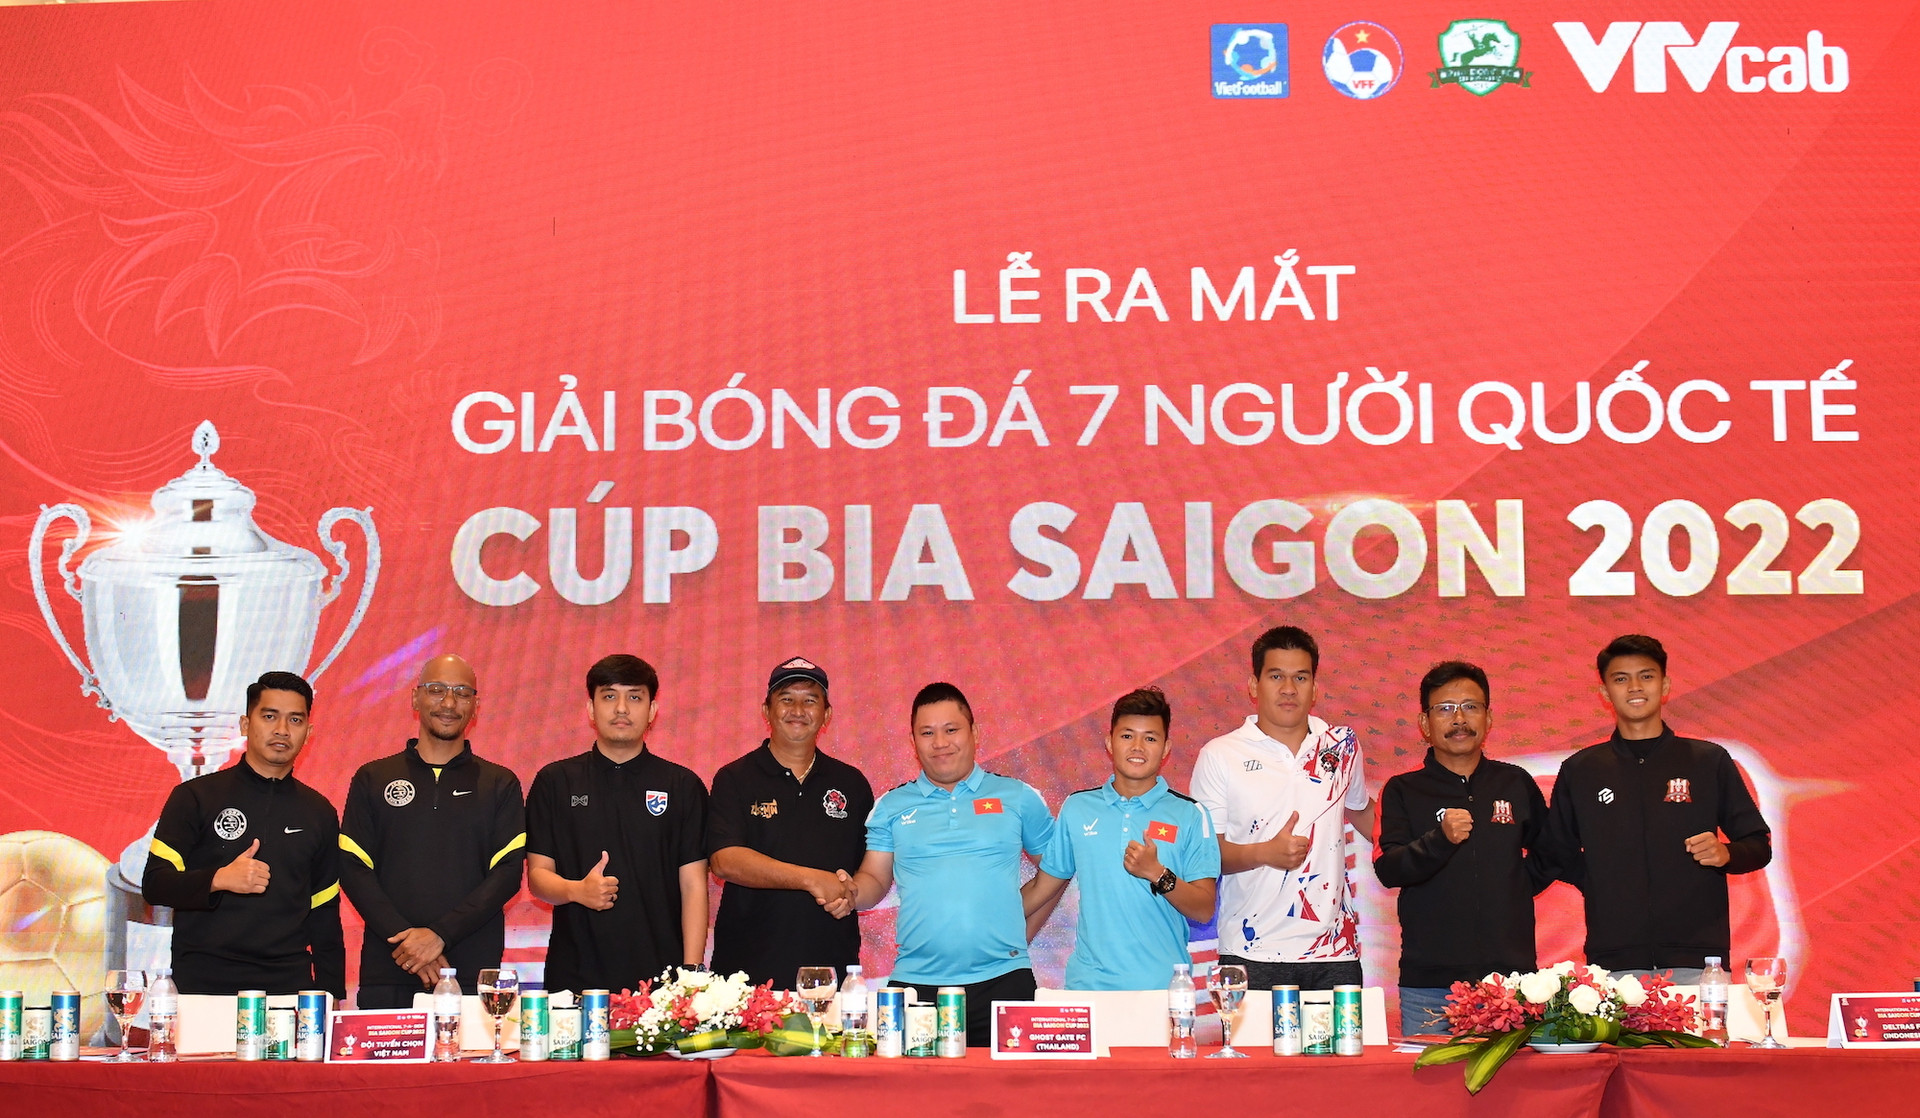 Đội tuyển chọn Việt Nam đấu Thái Lan, Indonesia ở giải bóng đá 7 người quốc tế - 1